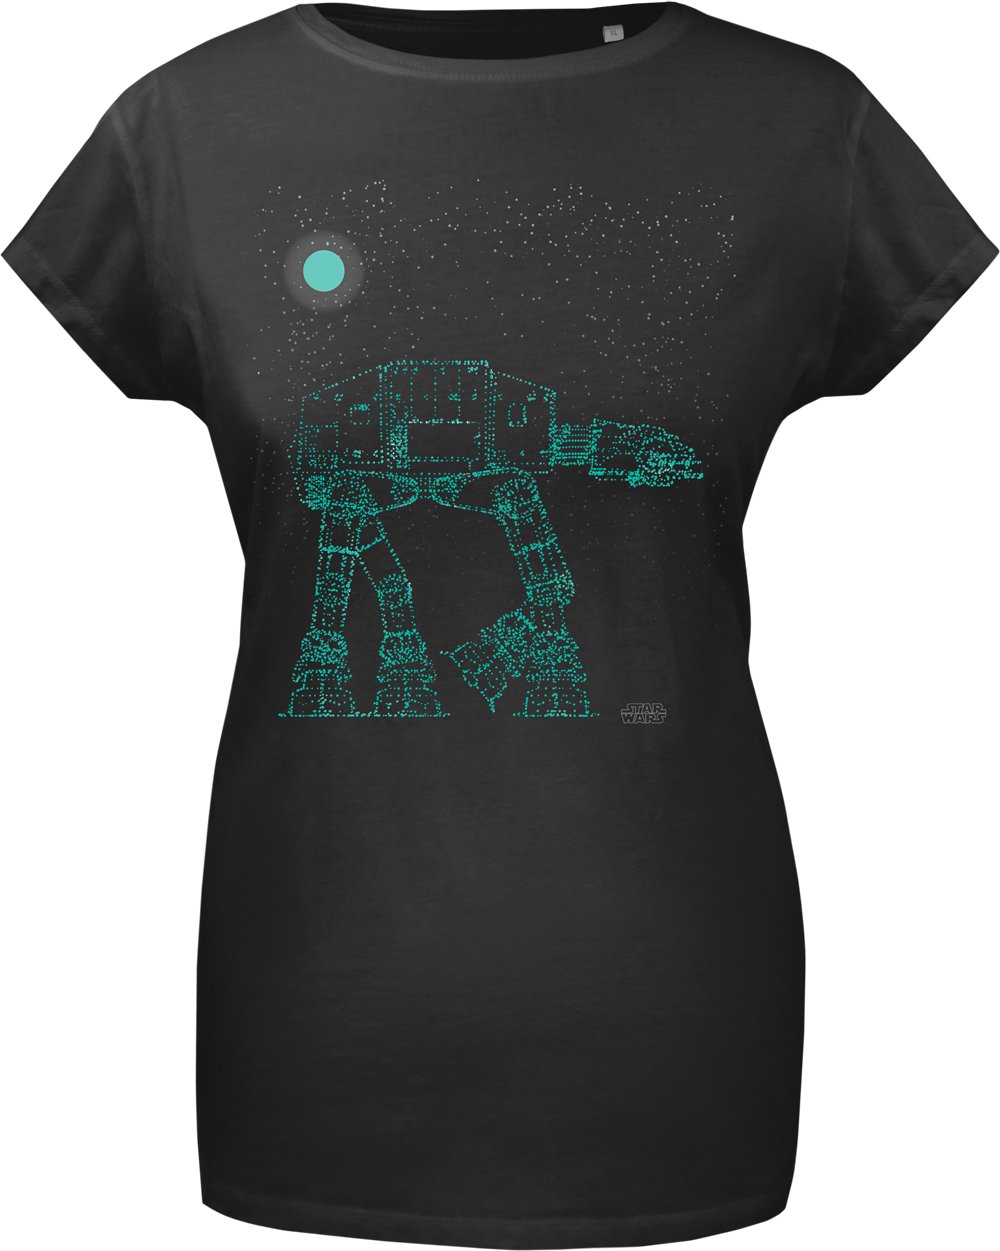 Glowing Imperial Walker T-shirt画像